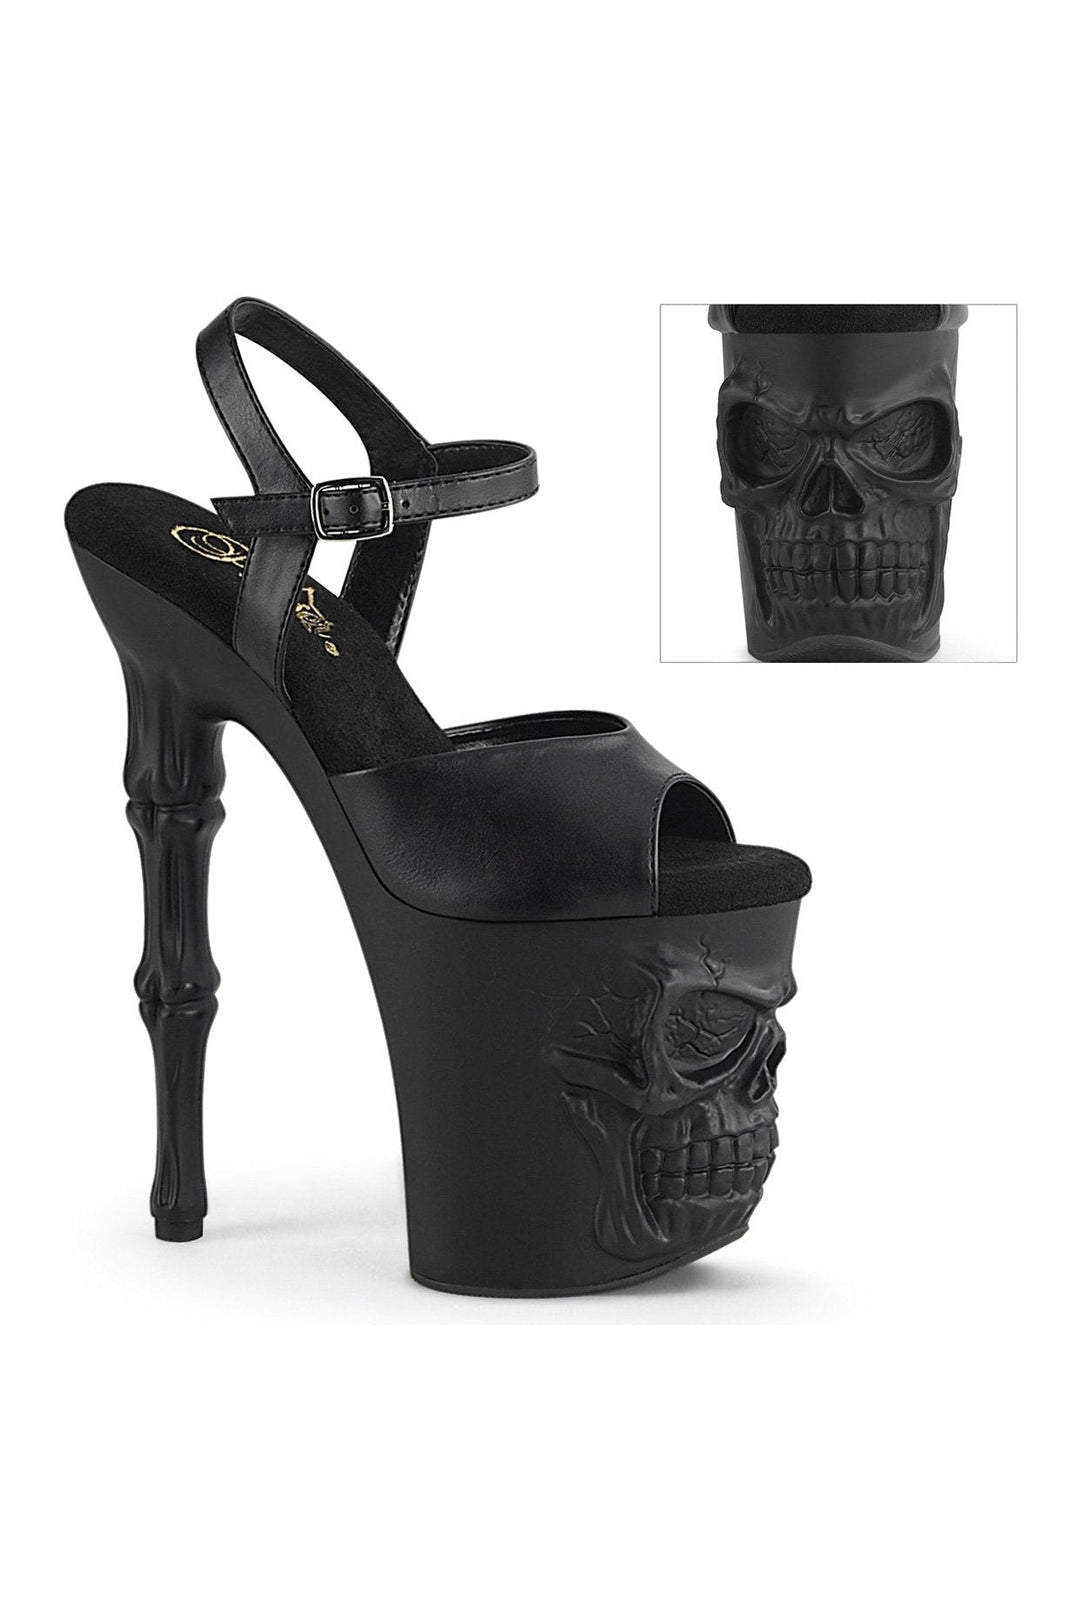 RAPTURE-809 Sandal | Black Faux Leather-Sandals-Pleaser-Black-6-Faux Leather-SEXYSHOES.COM